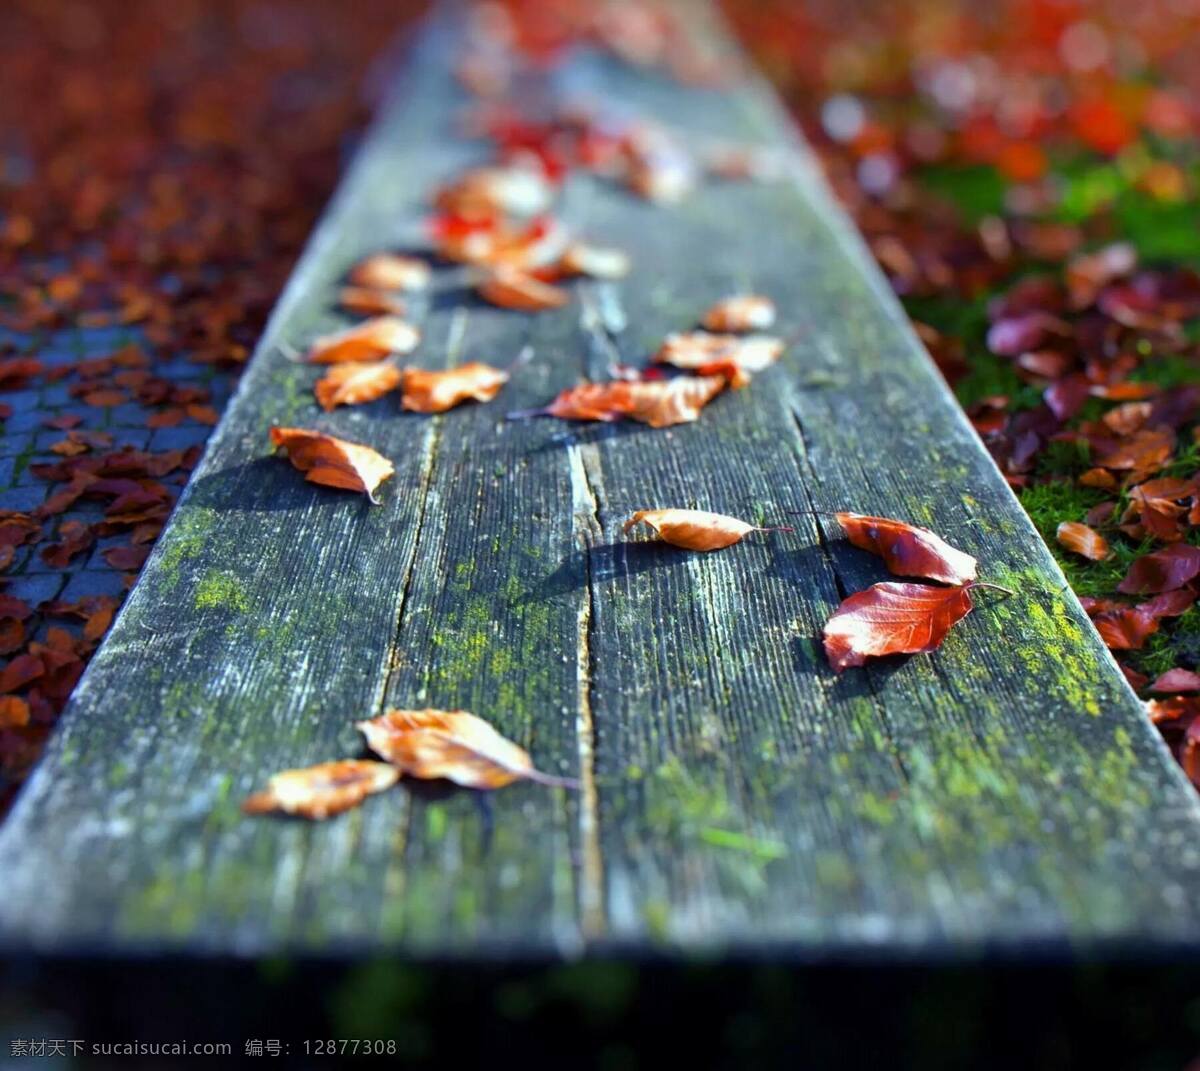 秋之落叶 秋 落叶 手机壁纸 怀旧 回忆 感伤 忧愁 木板 郊外 红叶 唯美 自然景观 自然风景